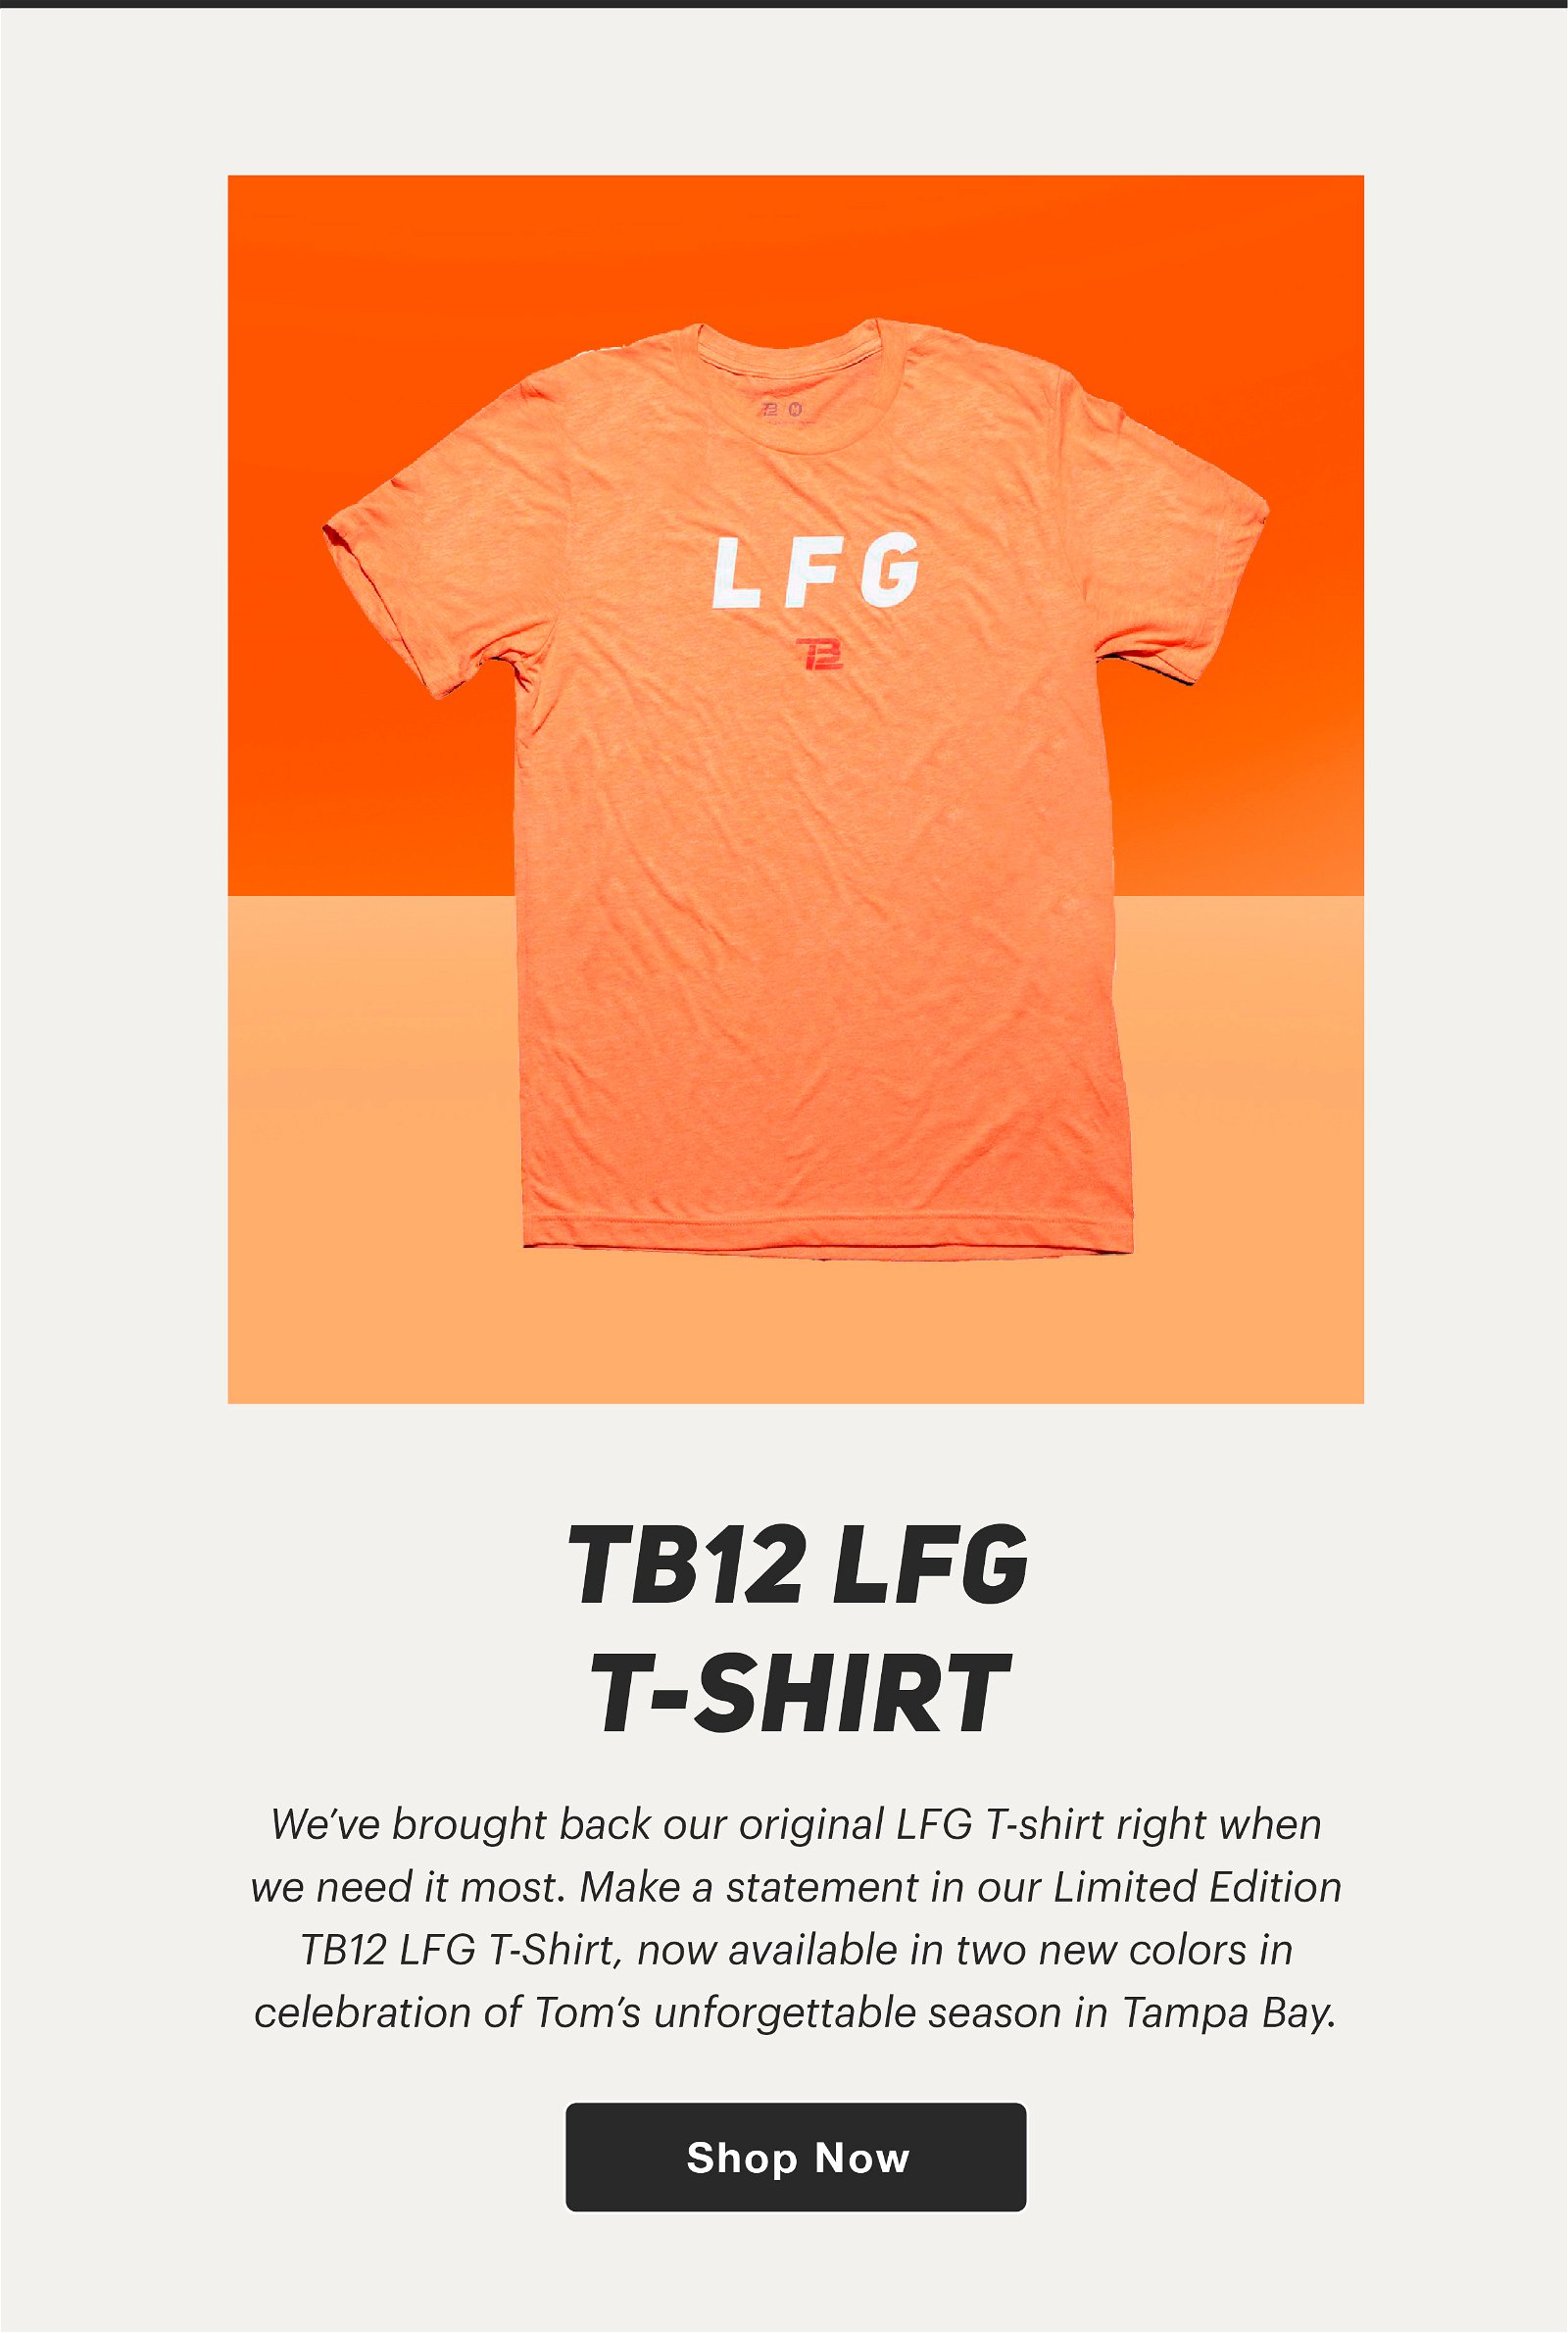 lfg tb12 shirt